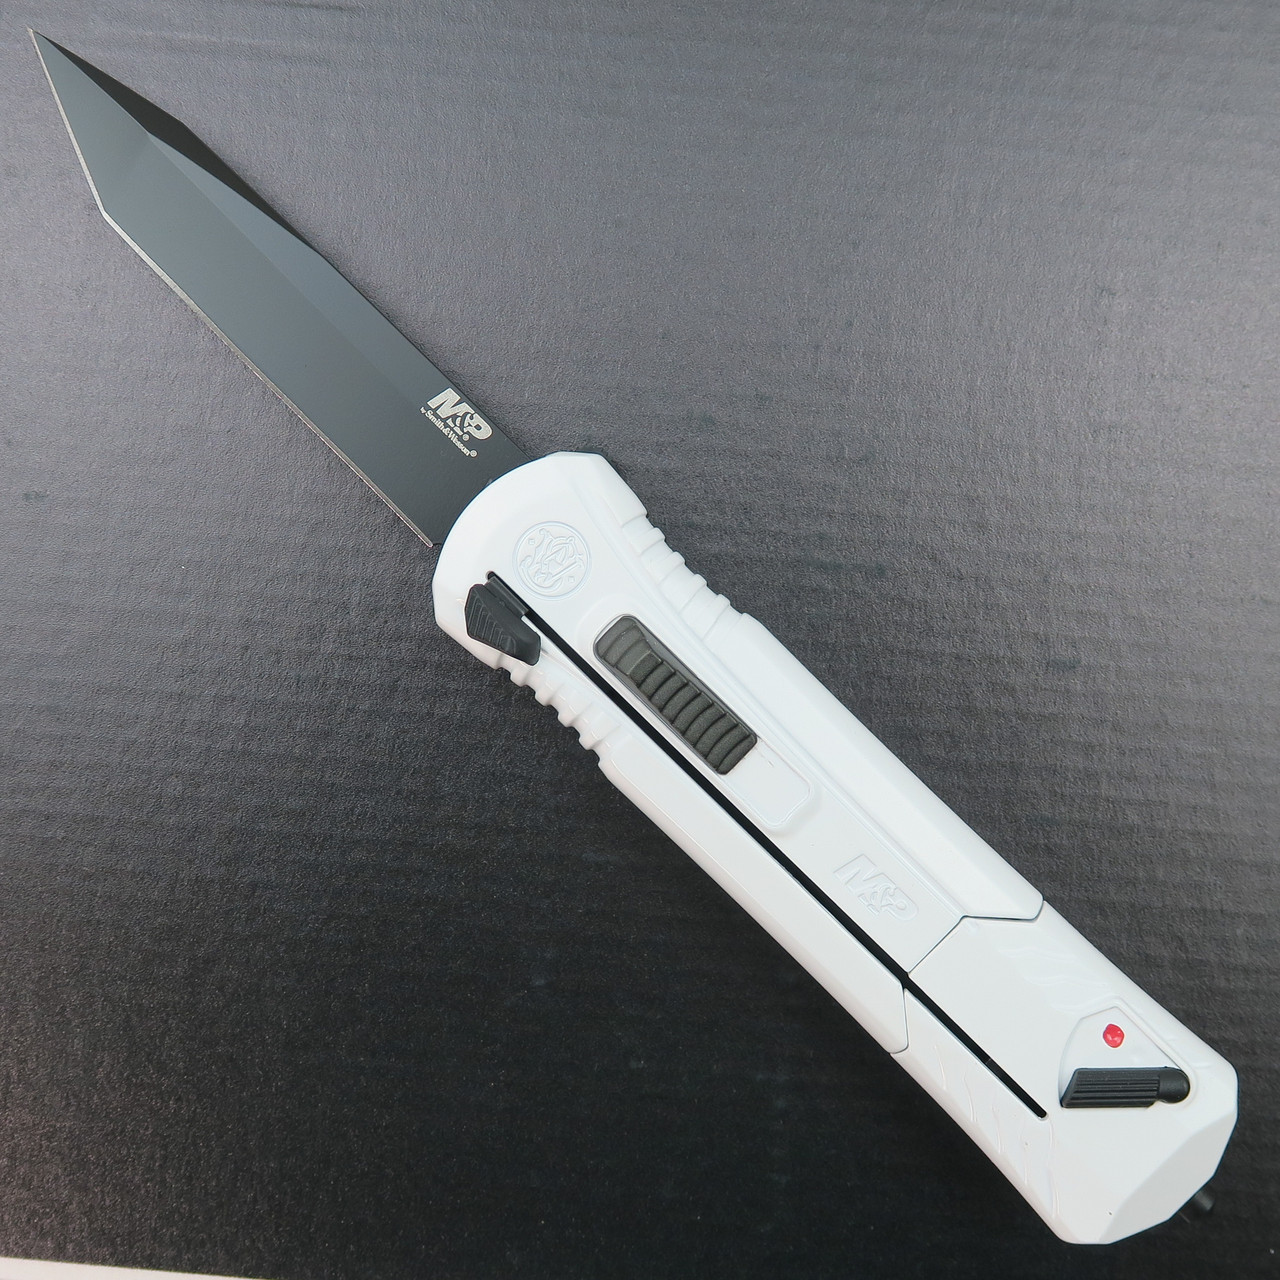 WORK SHARP Ken Onion Angle Set Knife Sharpener - Quest Outdoors